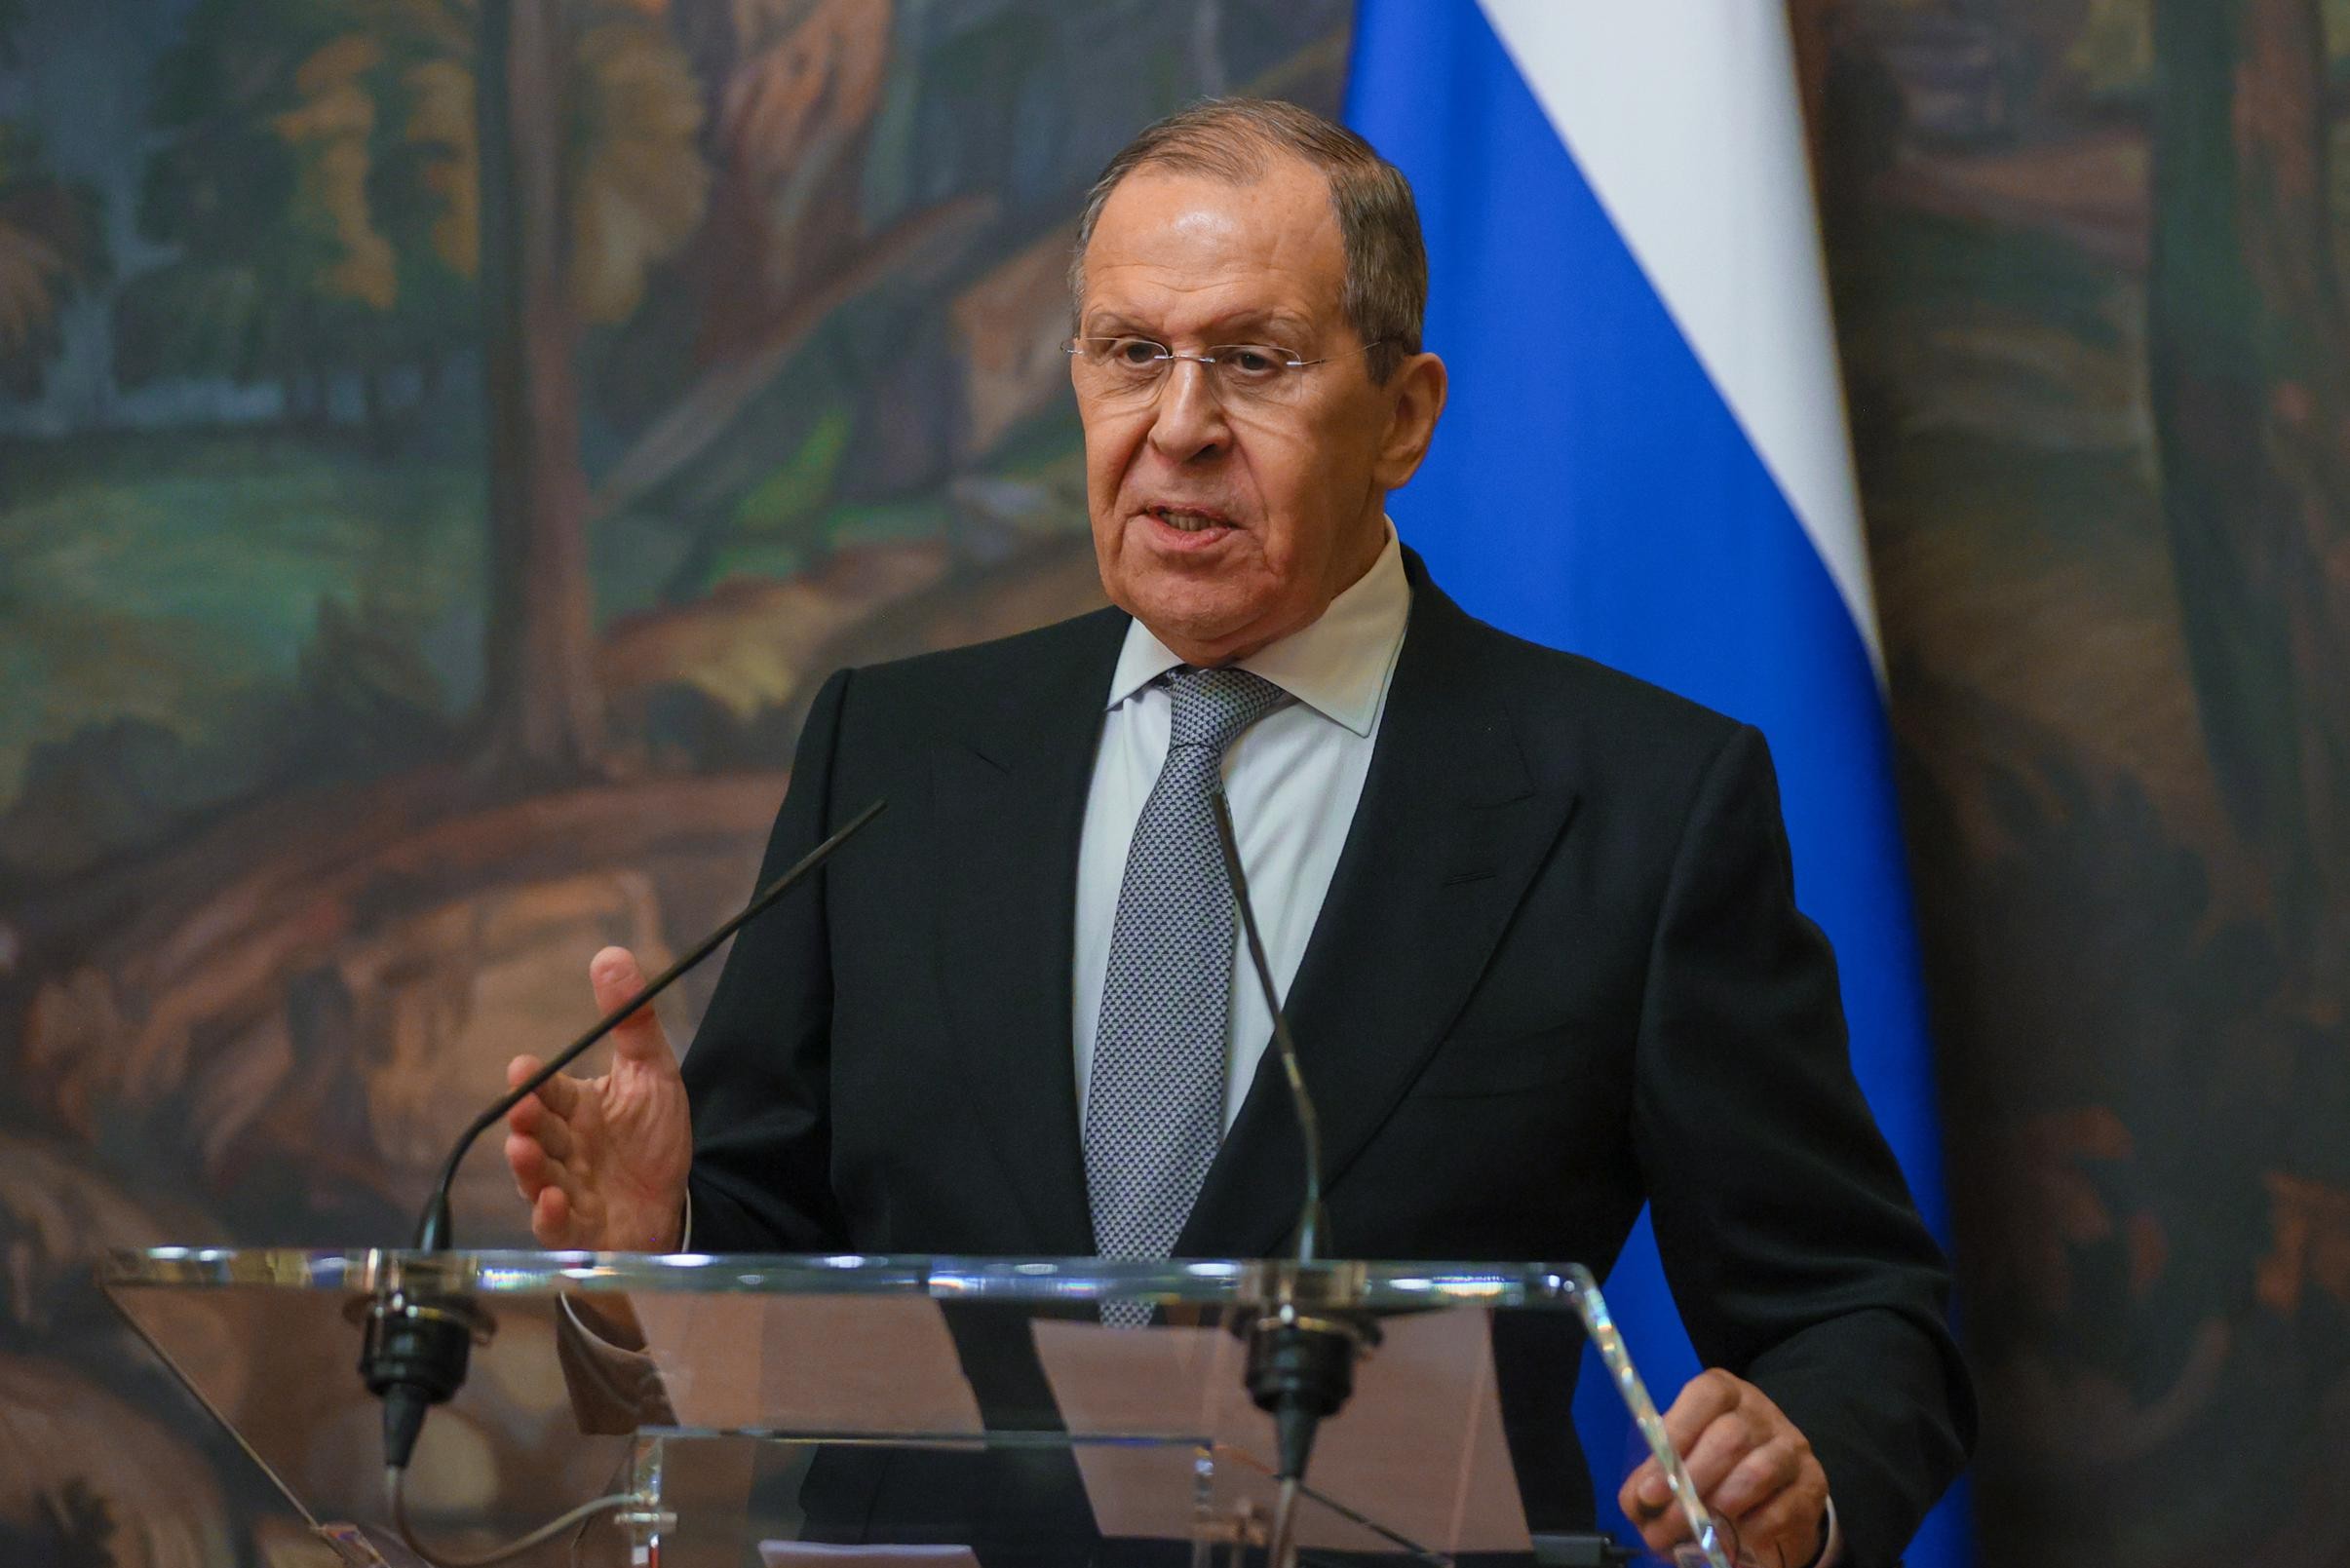 “Una bozza preliminare di piano di pace per Ucraina e Russia, in preparazione i documenti per i colloqui diretti tra Putin e Zelensky”